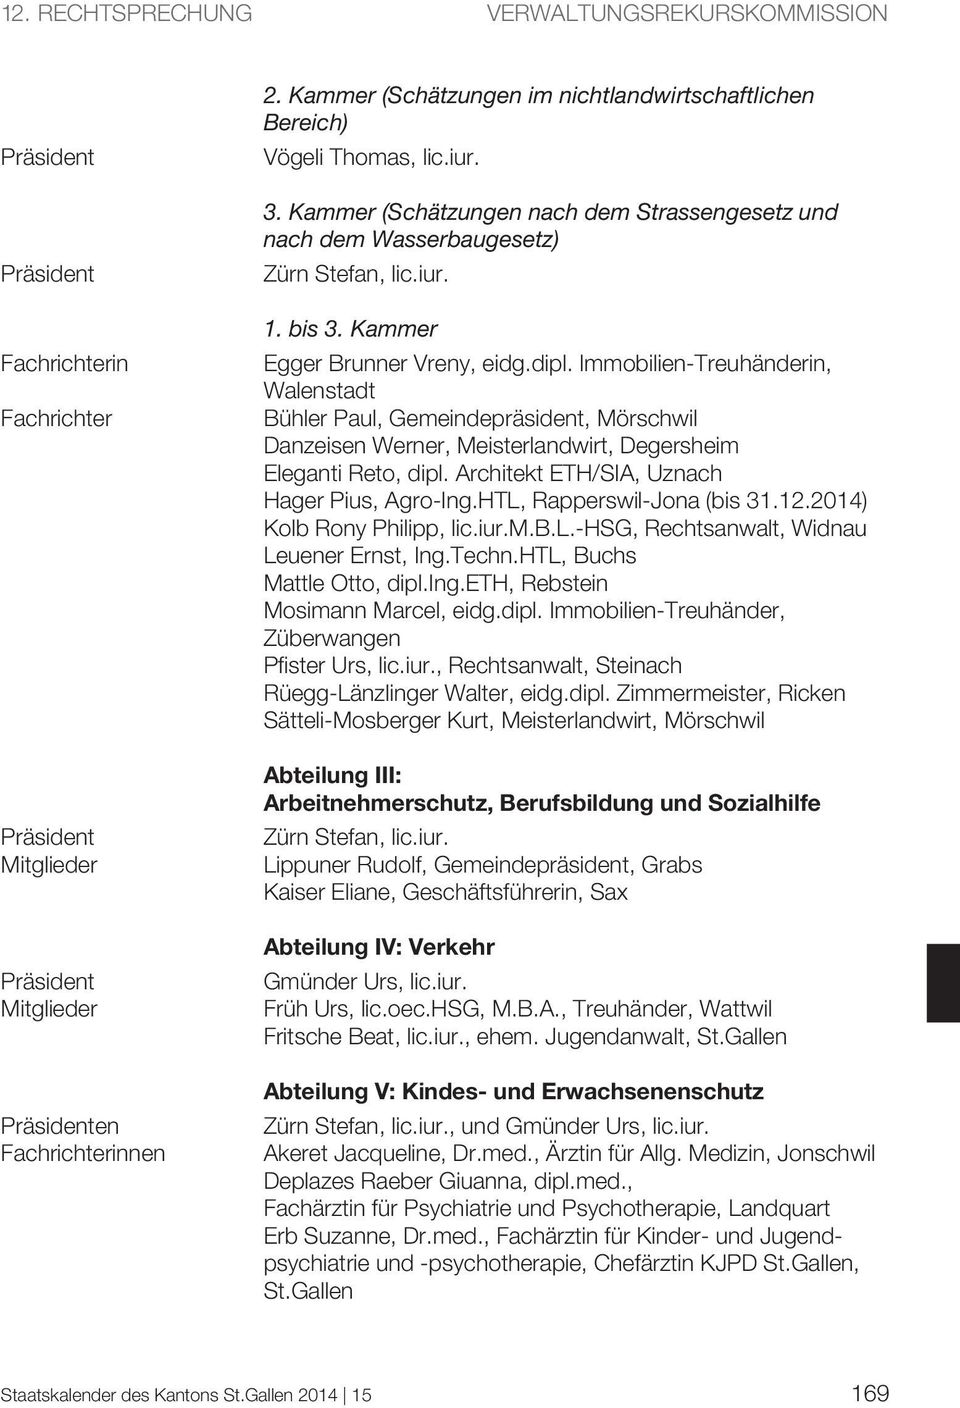 Immobilien-Treuhänderin, Walenstadt Bühler Paul, Gemeindepräsident, Mörschwil Danzeisen Werner, Meisterlandwirt, Degersheim Eleganti Reto, dipl. Architekt ETH/SIA, Uznach Hager Pius, Agro-Ing.